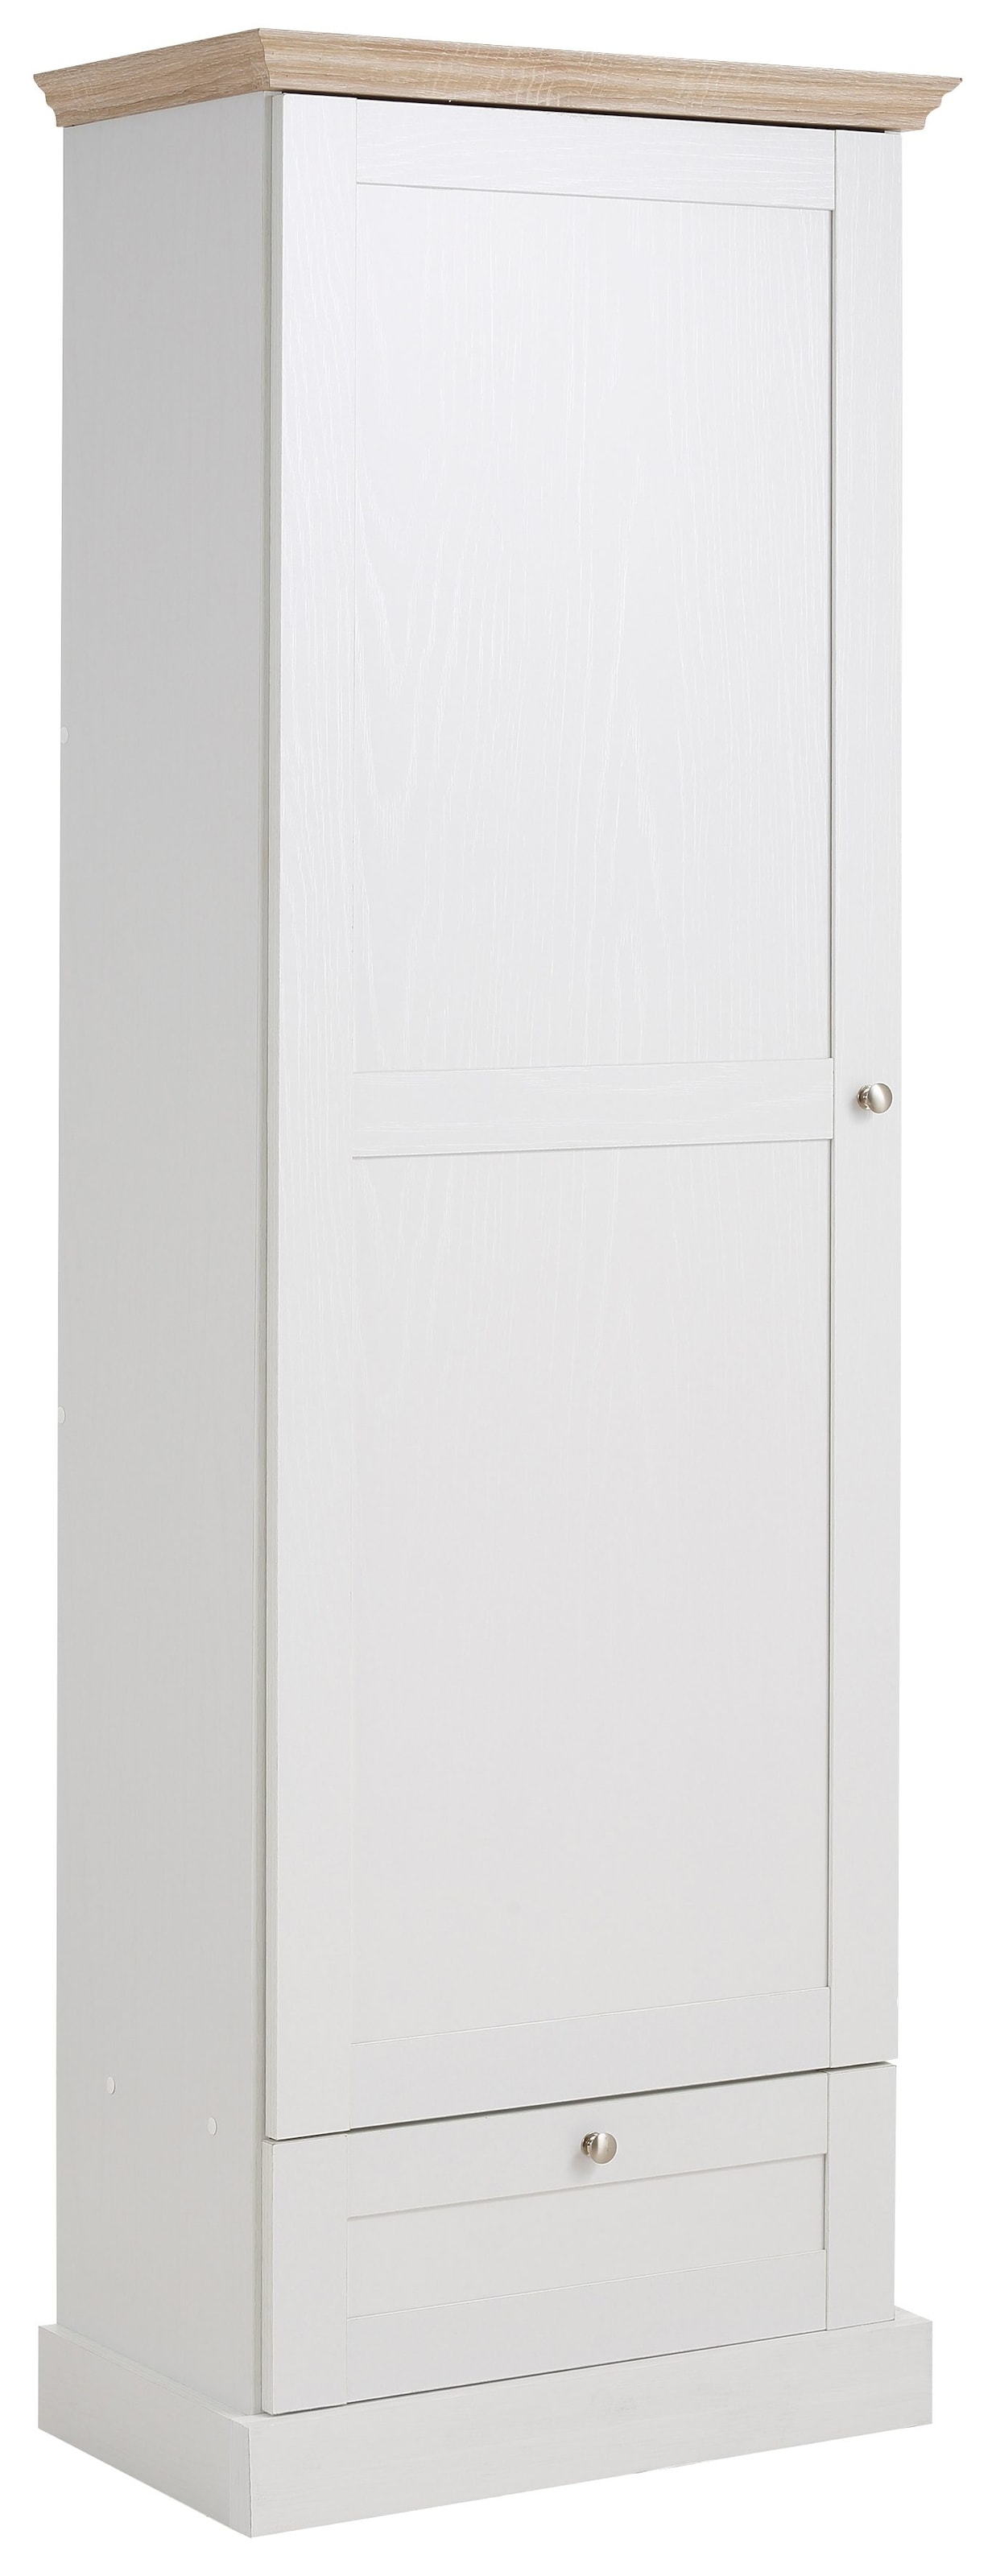 Home affaire Garderobenschrank »Binz«, mit schöner Holzoptik, mit vielen Stauraummöglichkeiten, Höhe 180 cm